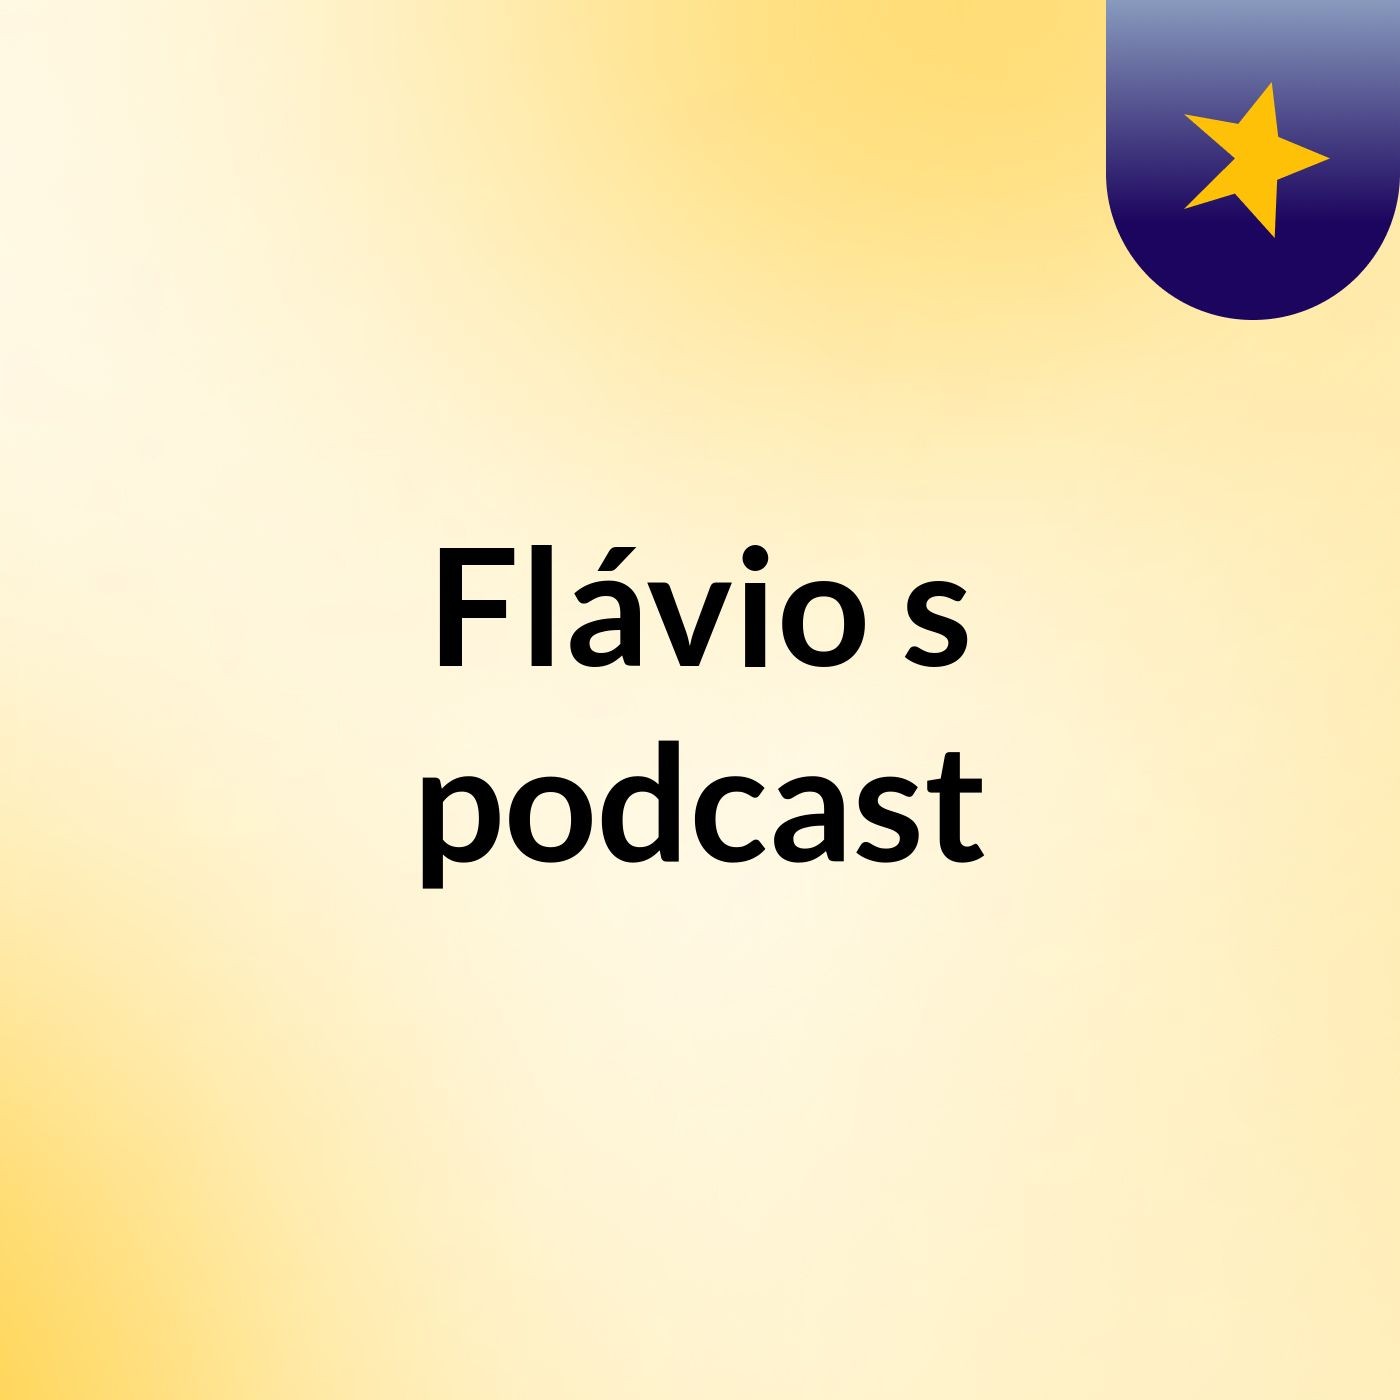 Flávio's podcast